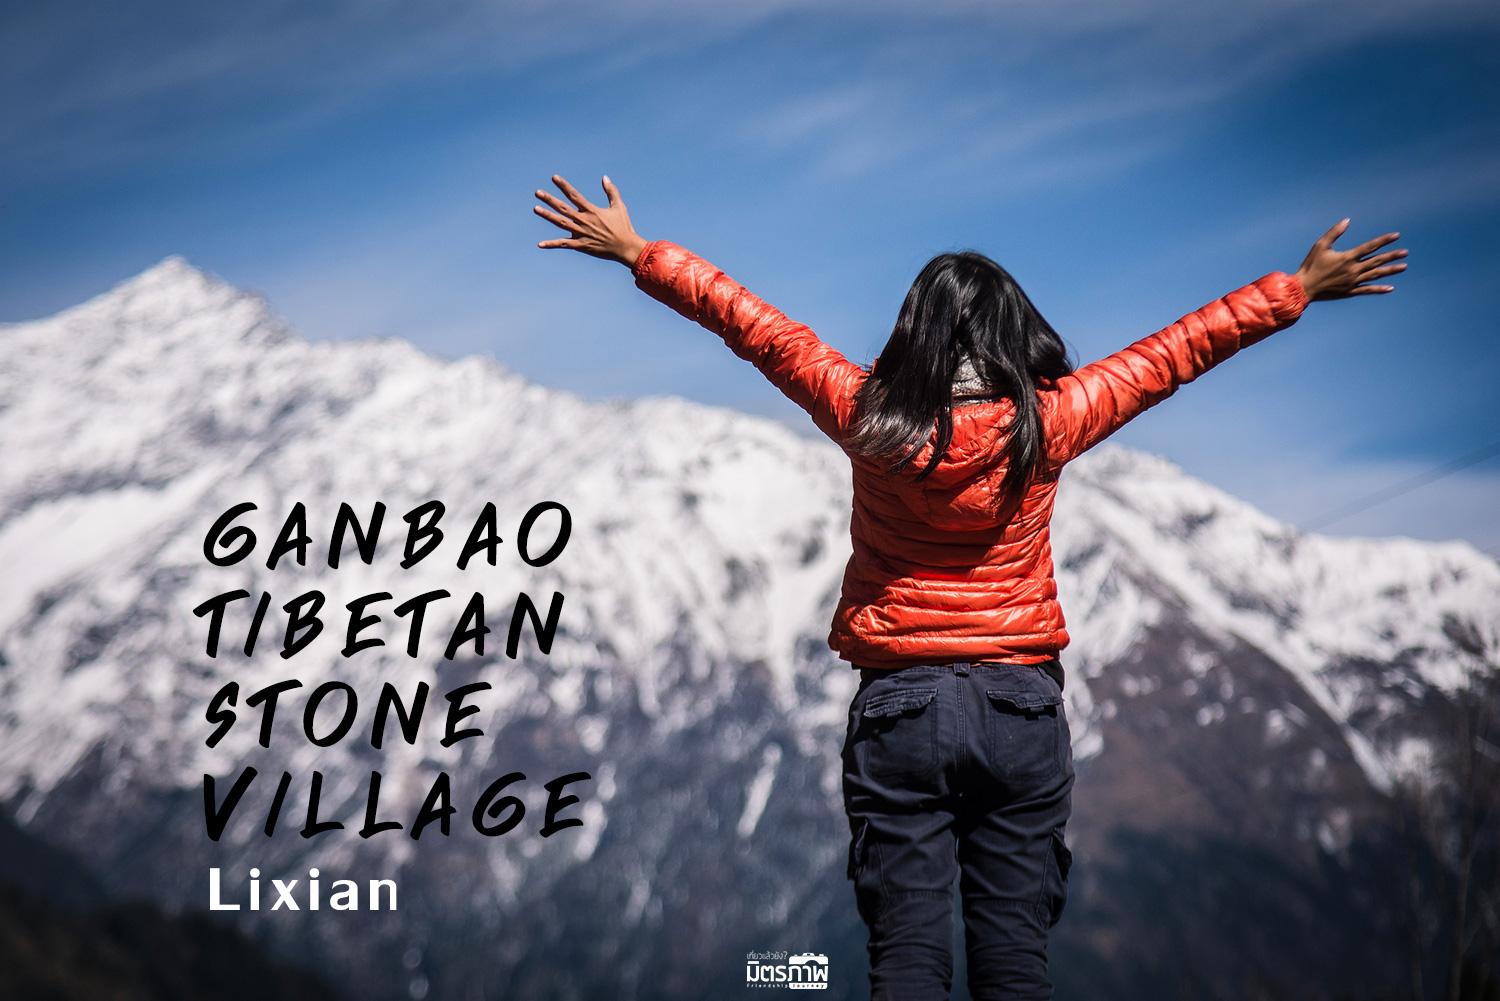 เที่ยวจีน เพราะบังเอิญ Ganbao Tibetan stone village : Lixian China